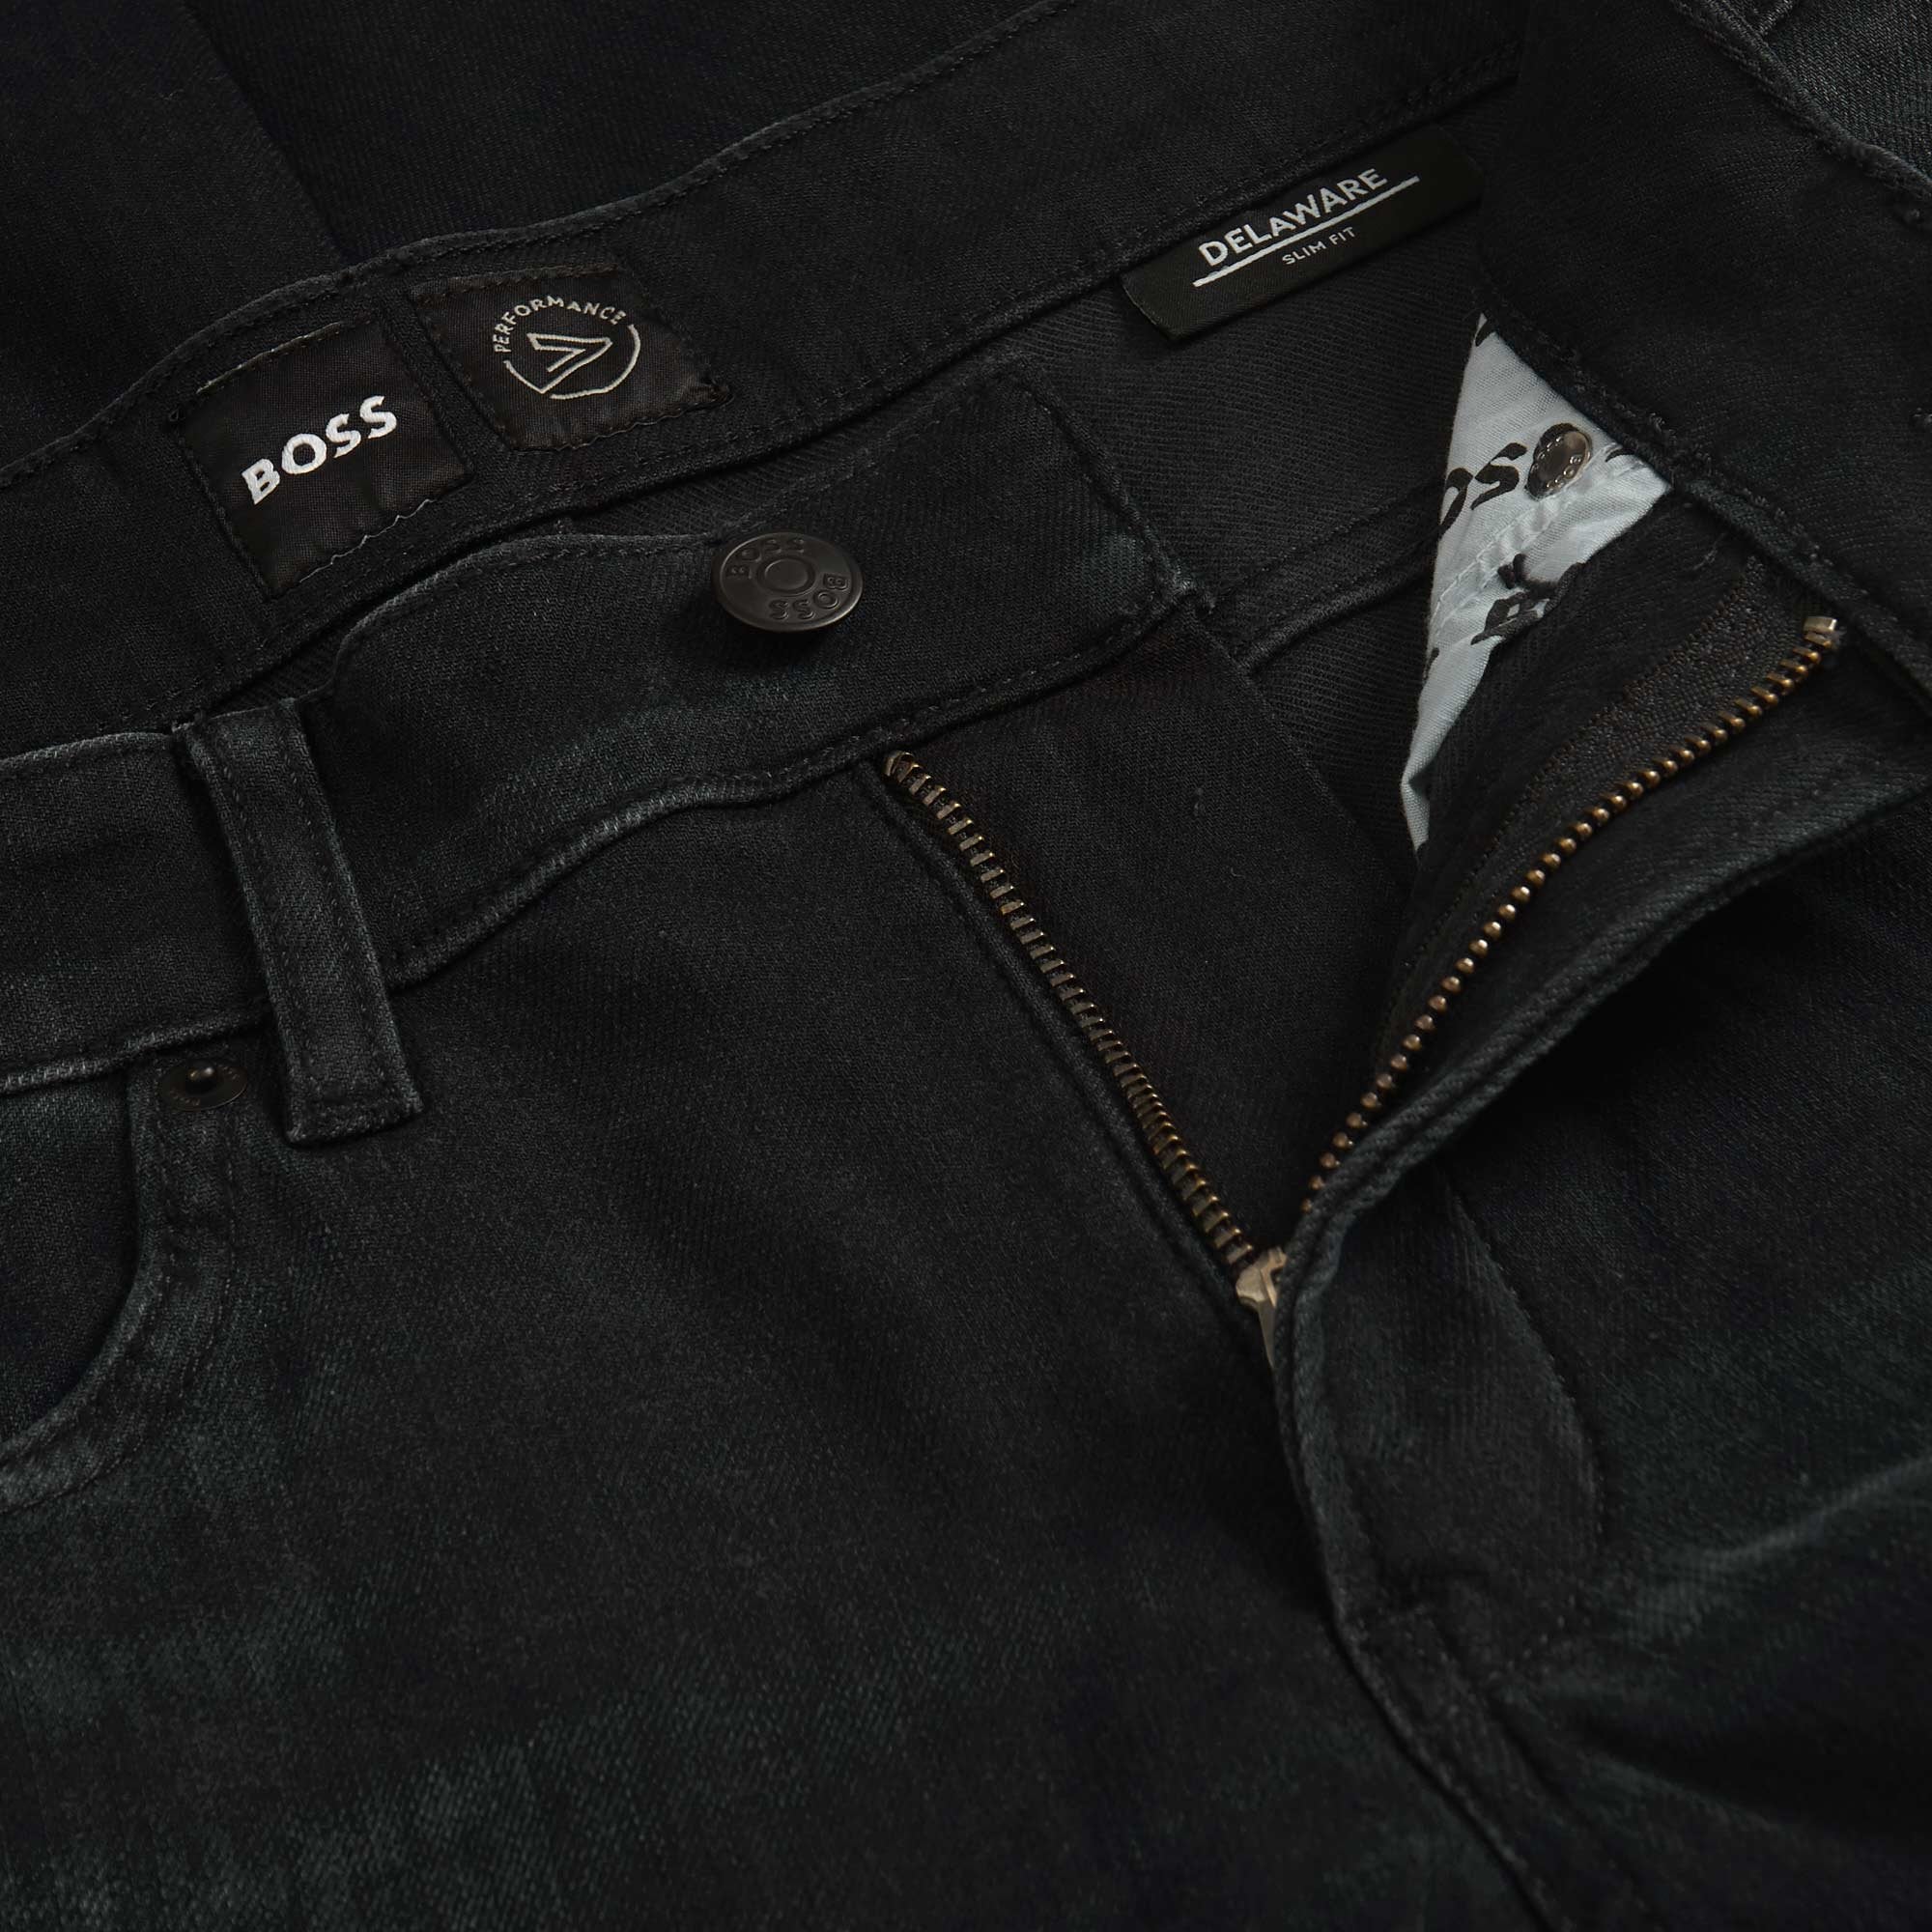 Boss Faded Jeans Navy - BossJeans